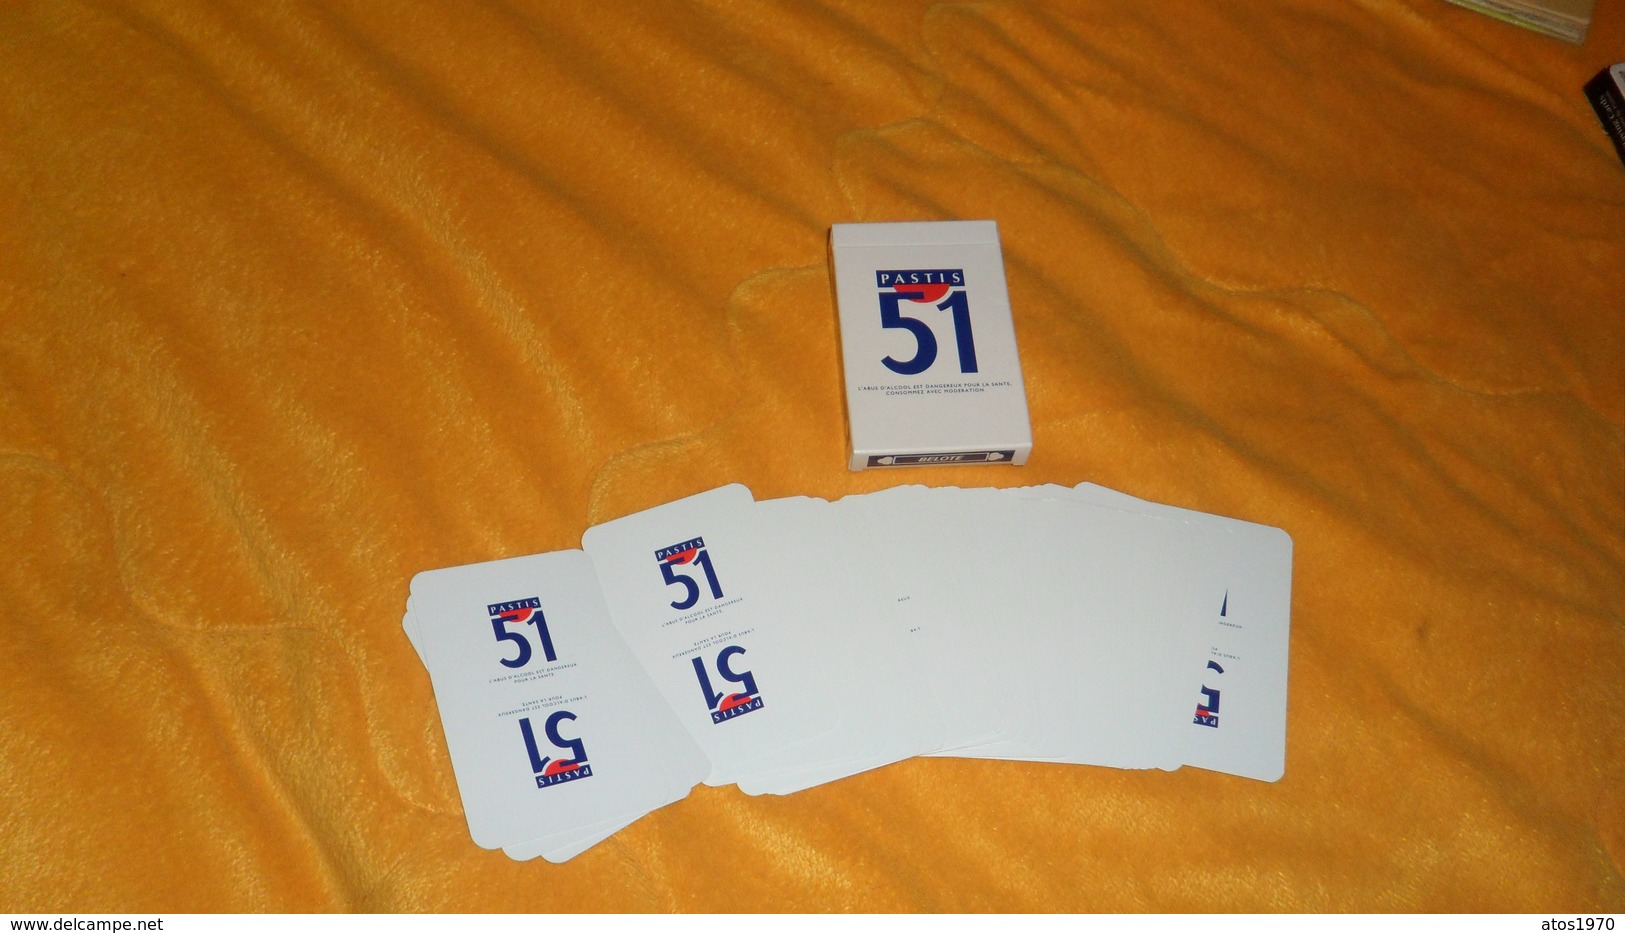 JEU DE 32 CARTES PUBLICITE PASTIS 51. - 32 Cards